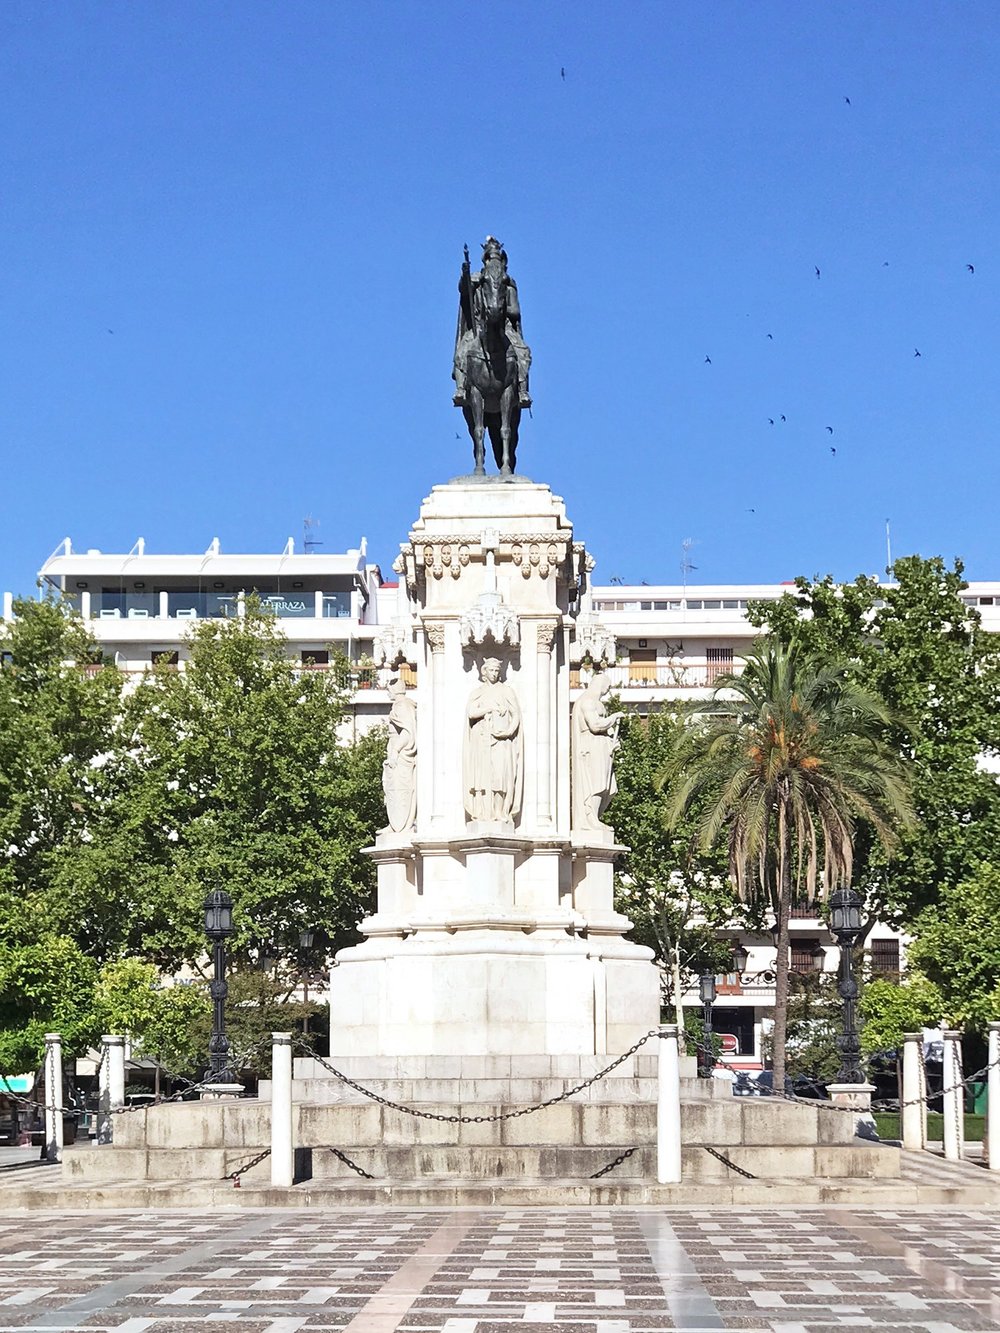 Seville Spain statue plaza.jpg